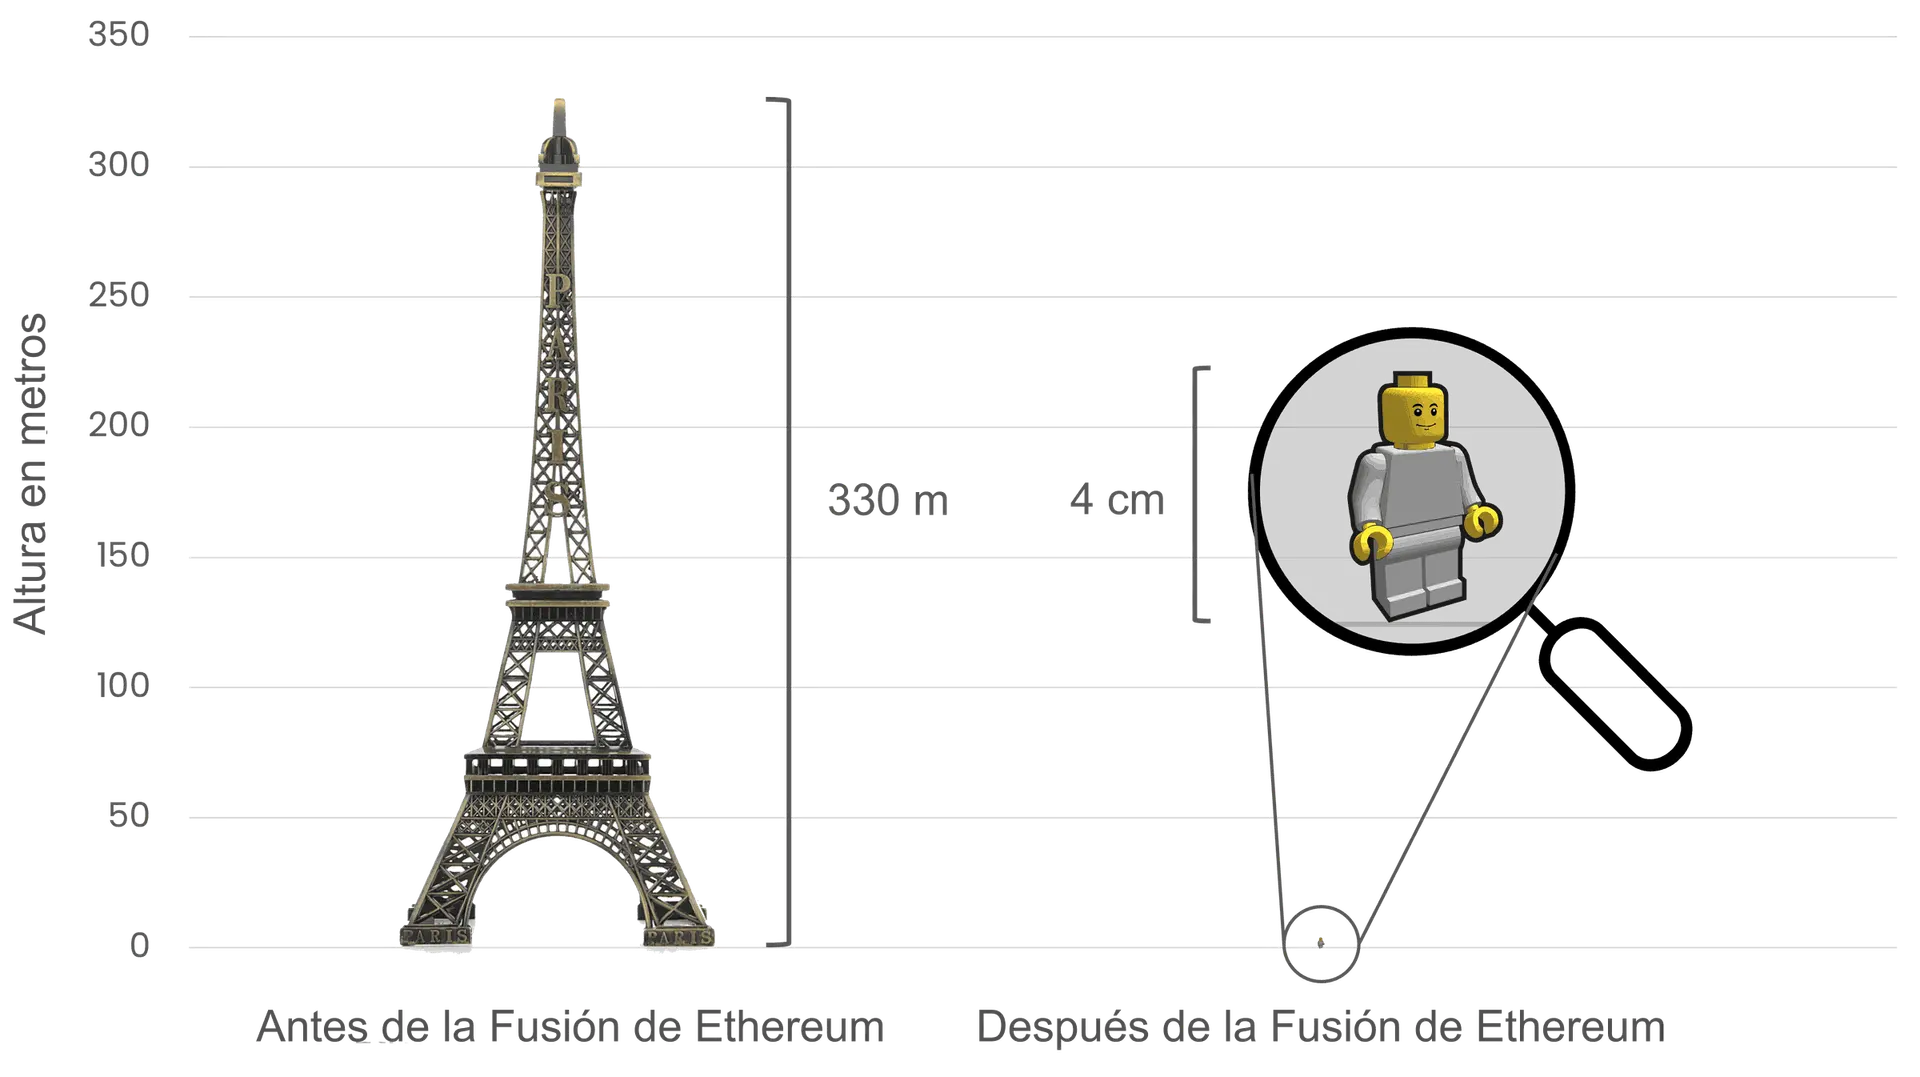 Comparación del consumo de energía de Ethereum antes y después de La Fusión, utilizando la torre Eiffel (330 metros de altura) a la izquierda, para simbolizar el alto consumo de energía antes de esta; y un pequeño muñeco Lego de 4 cm de altura a la derecha, para representar la drástica reducción en el consumo después de La Fusión.